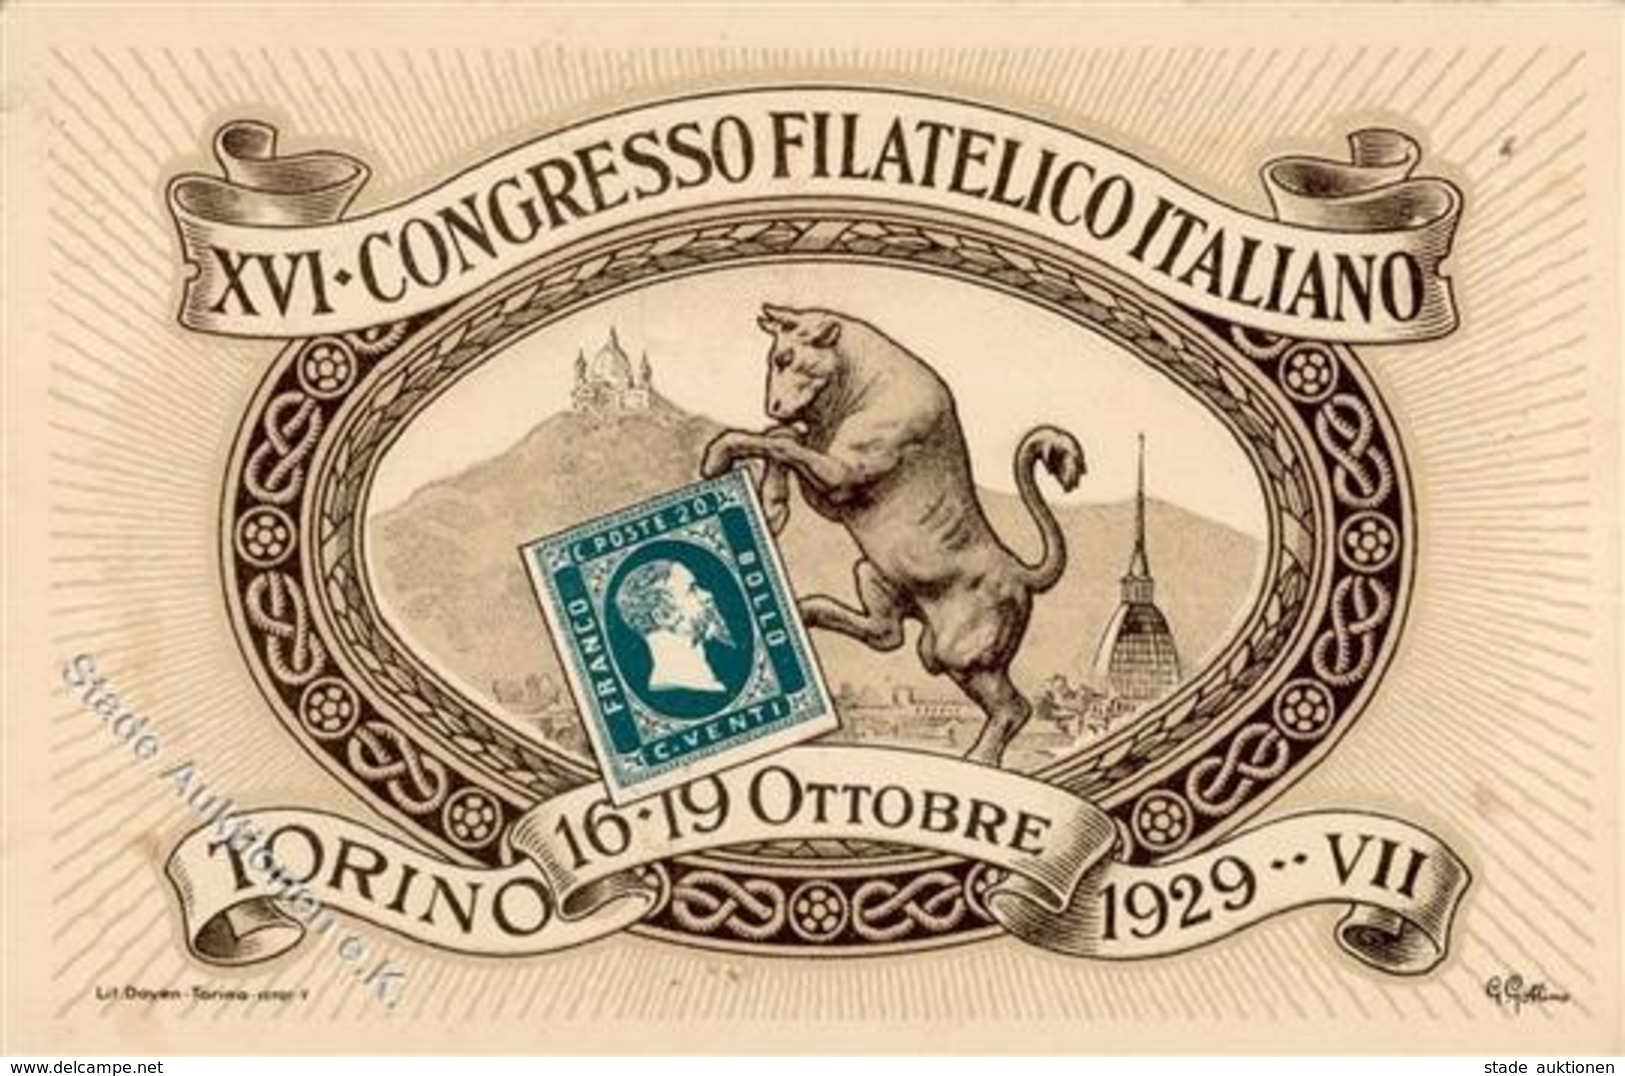 Philatelistentag Torino (10100) Italien XVI. Congresso Filatelico Italiano I-II - Postal Services